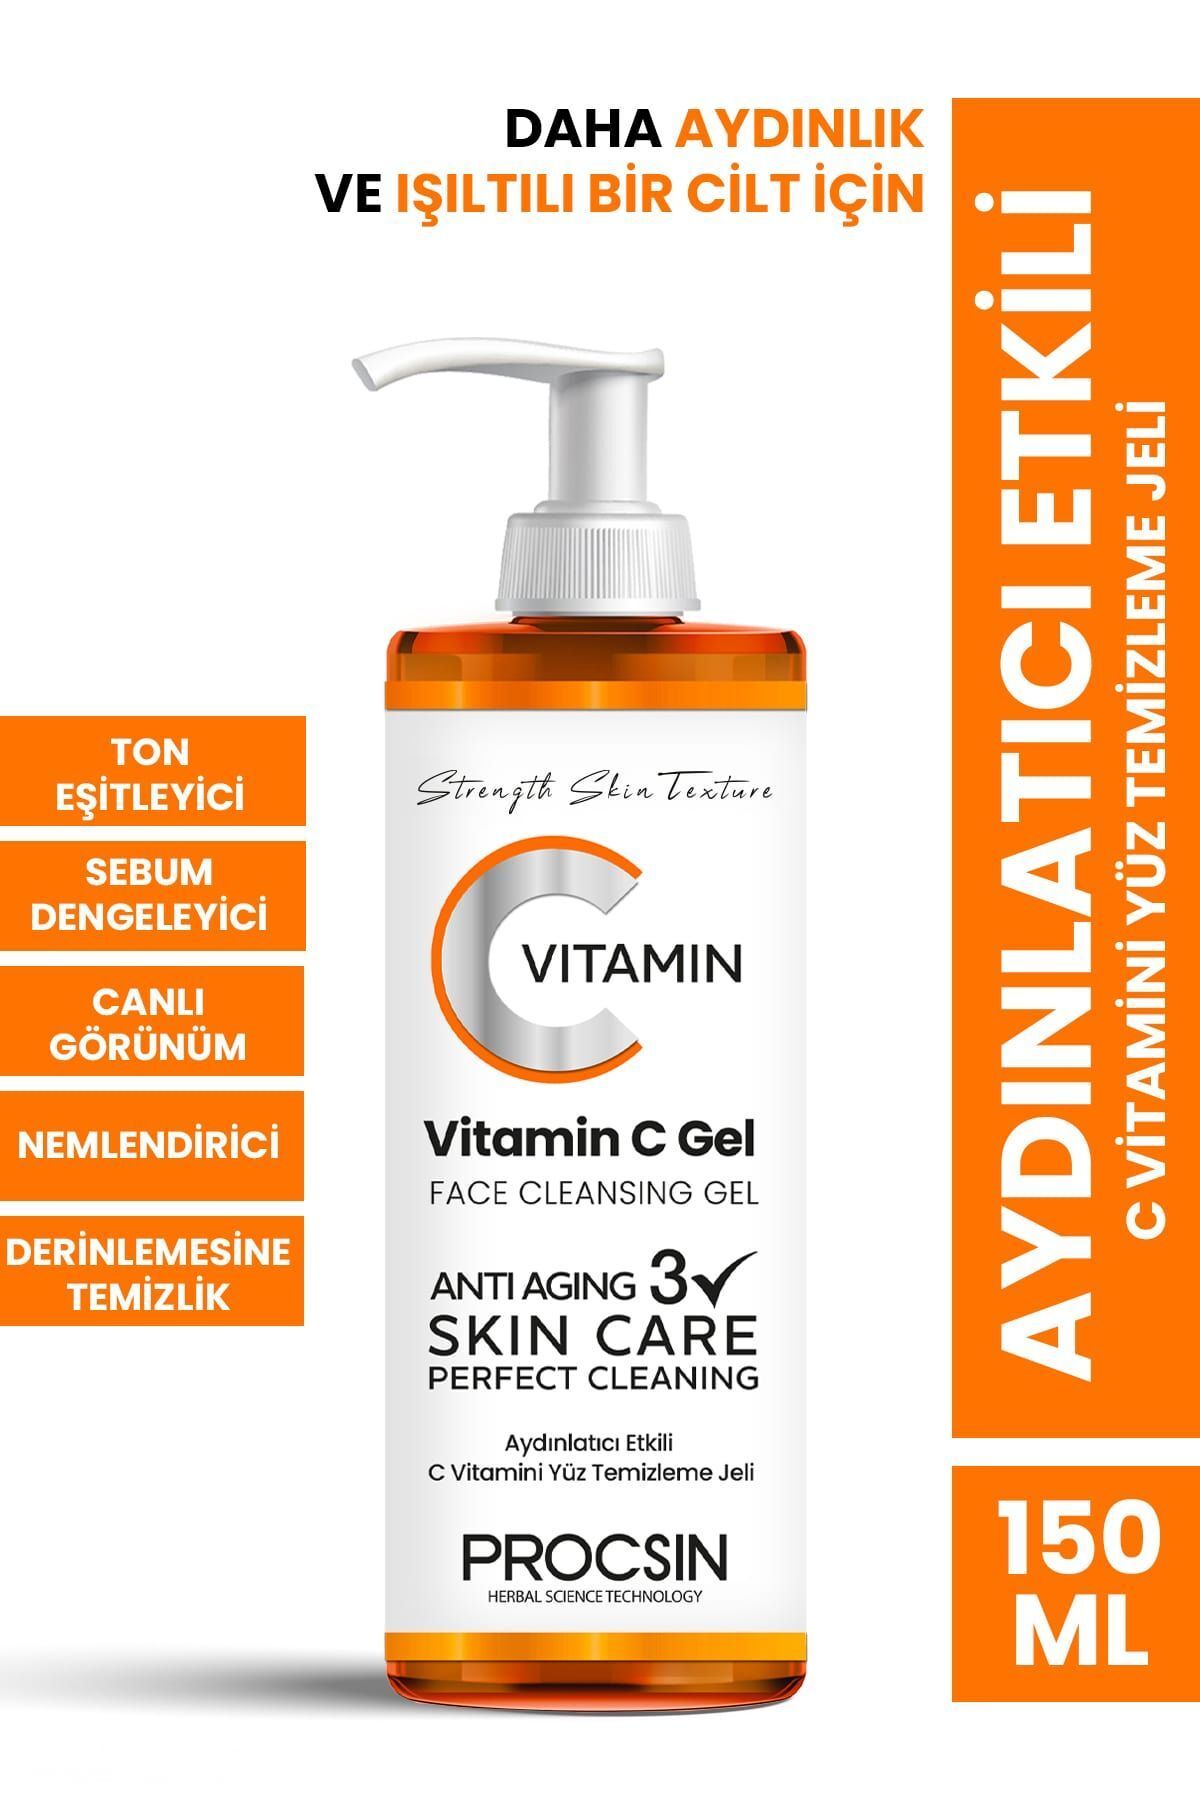 PROCSIN Aydınlatıcı Etkili C Vitamini Yüz Temizleme Jeli 150 ML